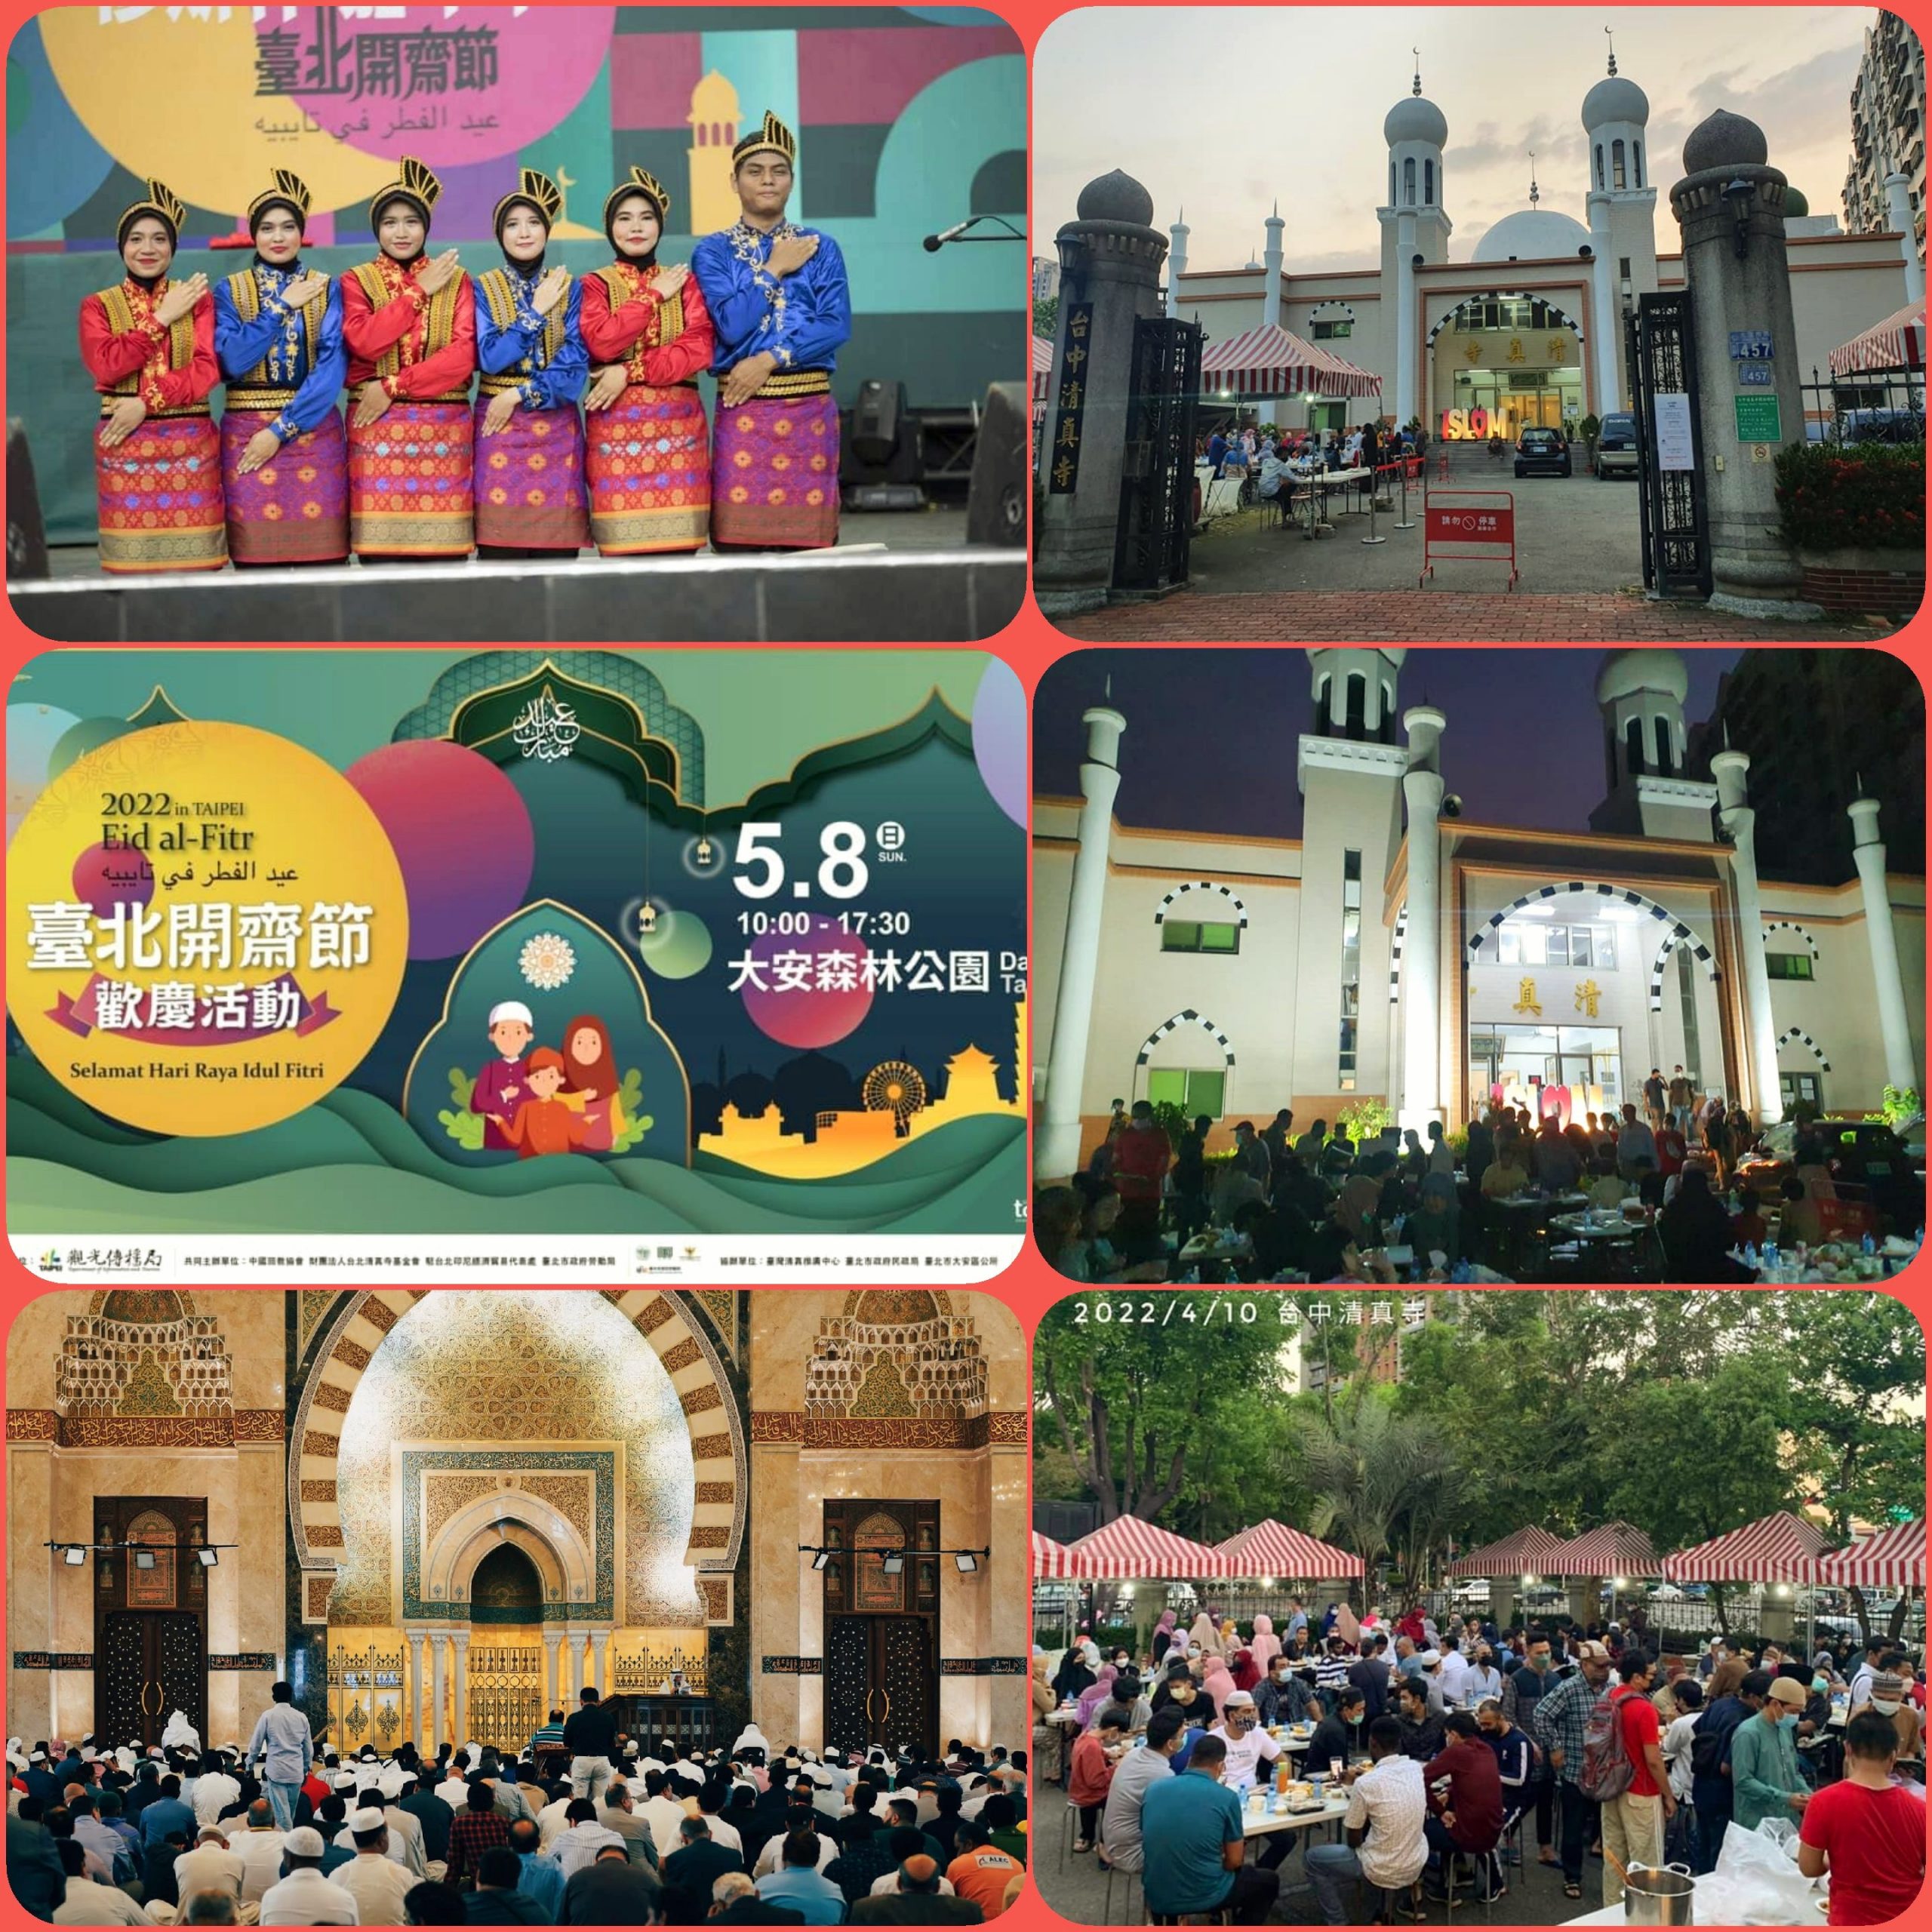 بلدية "تايبيه" تنظم كل عام احتفالية كبرى بمناسبة عيد الفطر بهدف تعزيز التنوع الثقافي والديني لسكان العاصمة